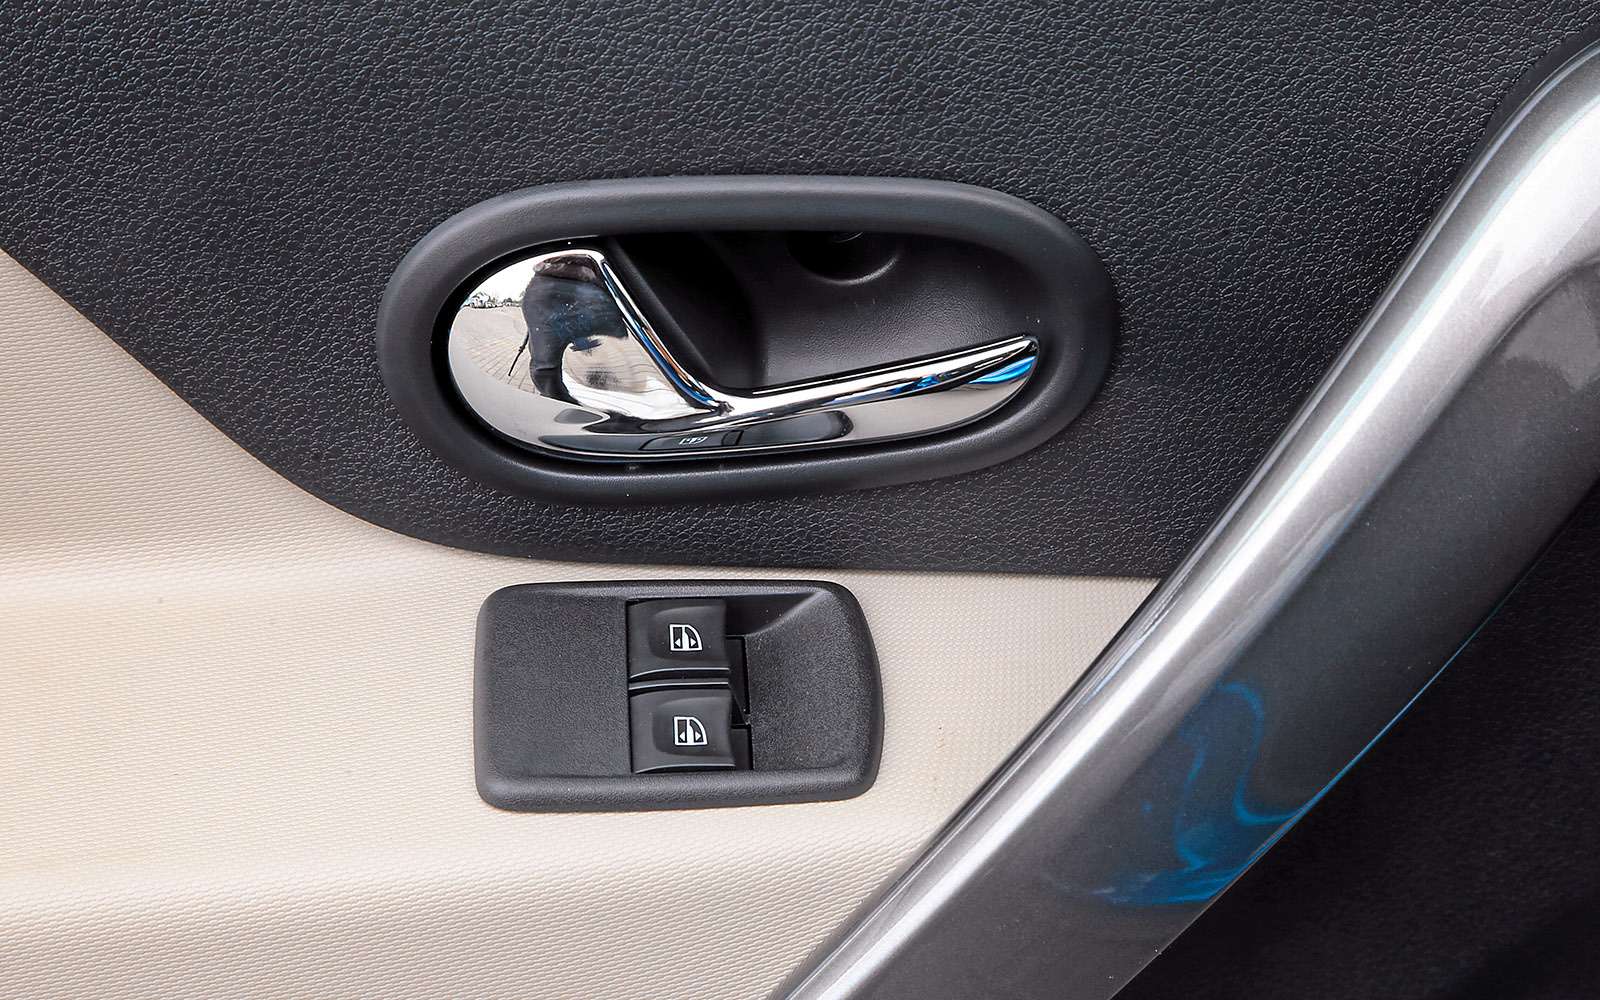 Блок управления стеклоподъемниками на водительской двери Логана купированный: клавиши управления задними стеклоподъемниками вынесены на центральную консоль.